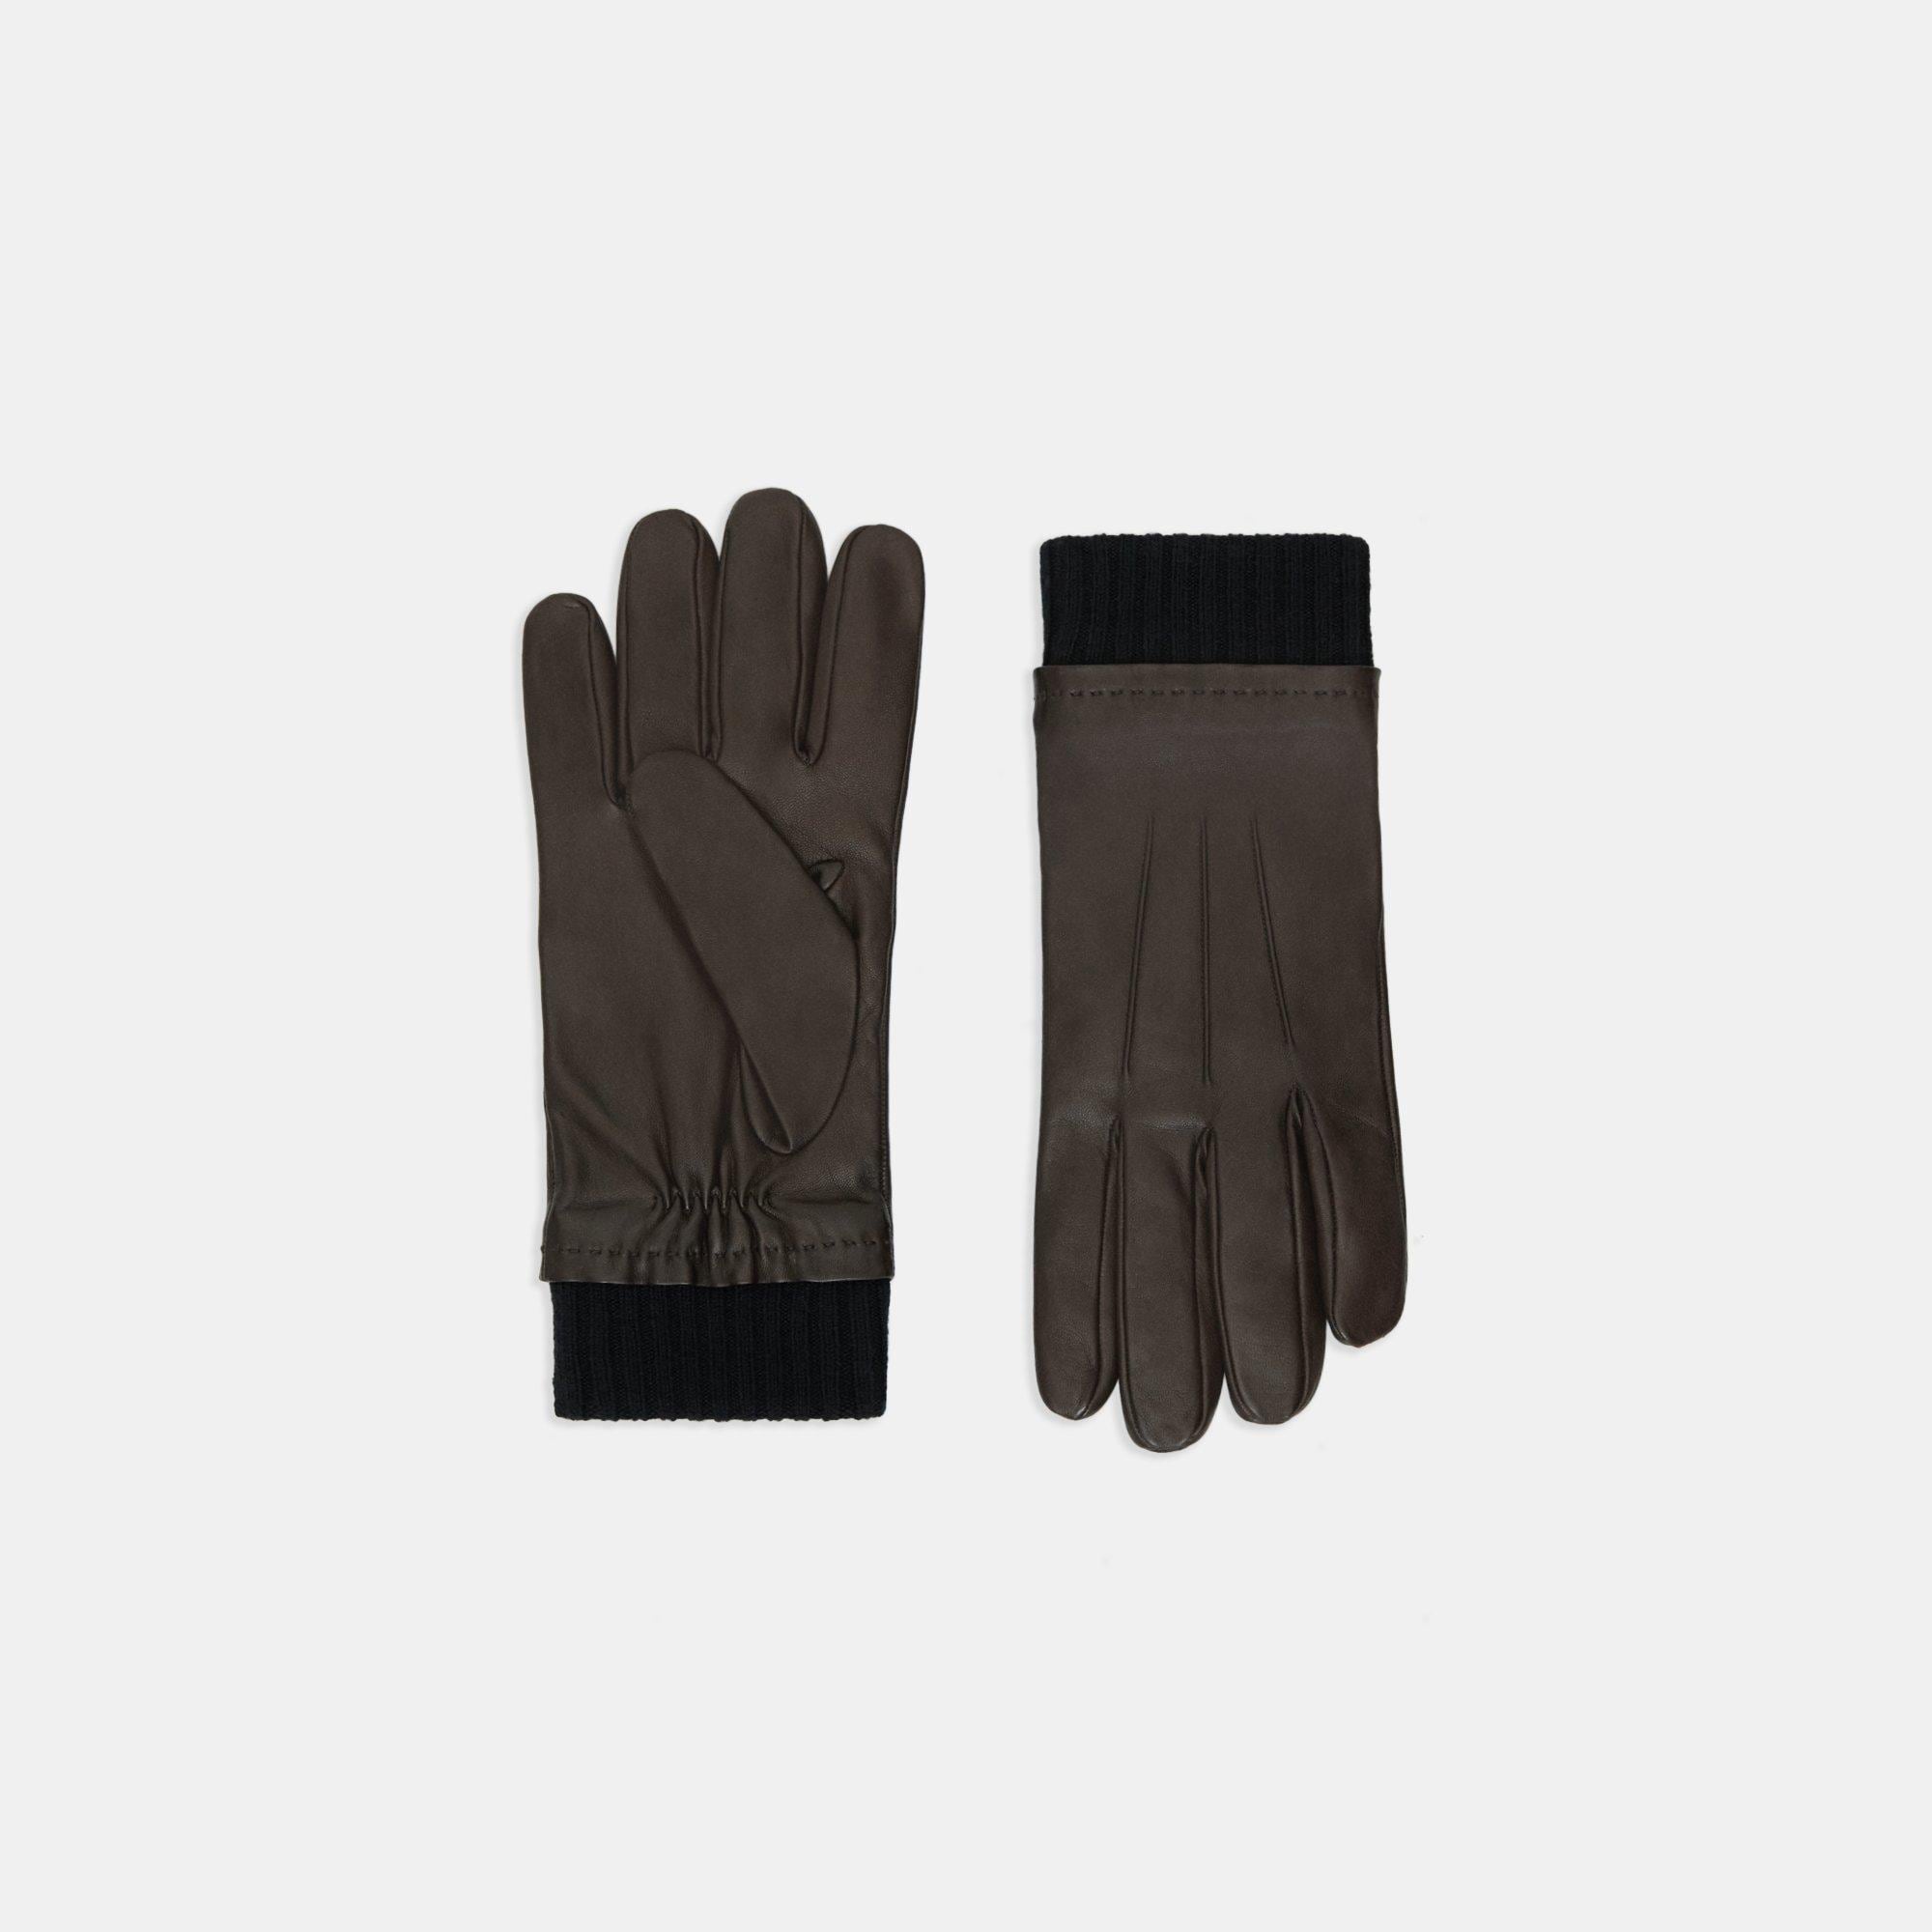 띠어리 Theory Ribbed Cuff Gloves in Leather,DARK BROWN